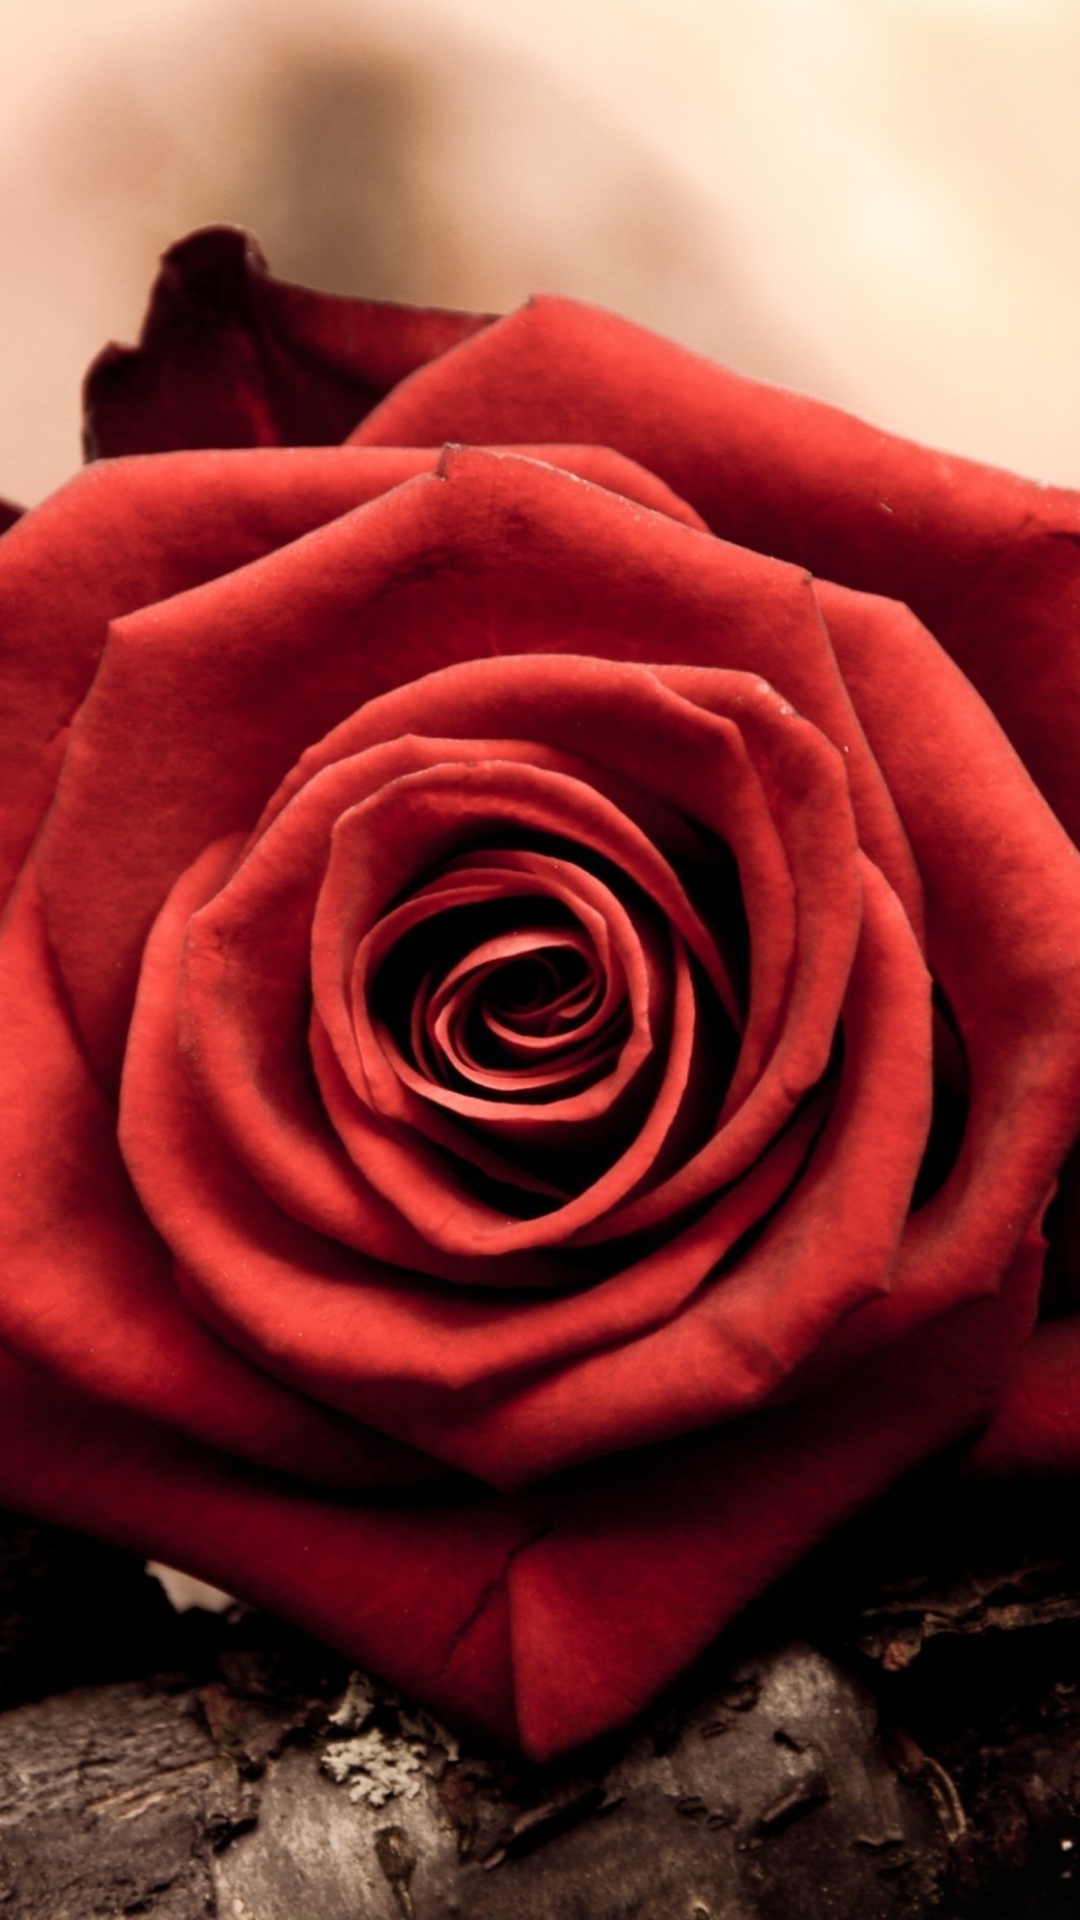 Free Download Rose Bud Red Petals Macro Iphone 6 Wallpaper